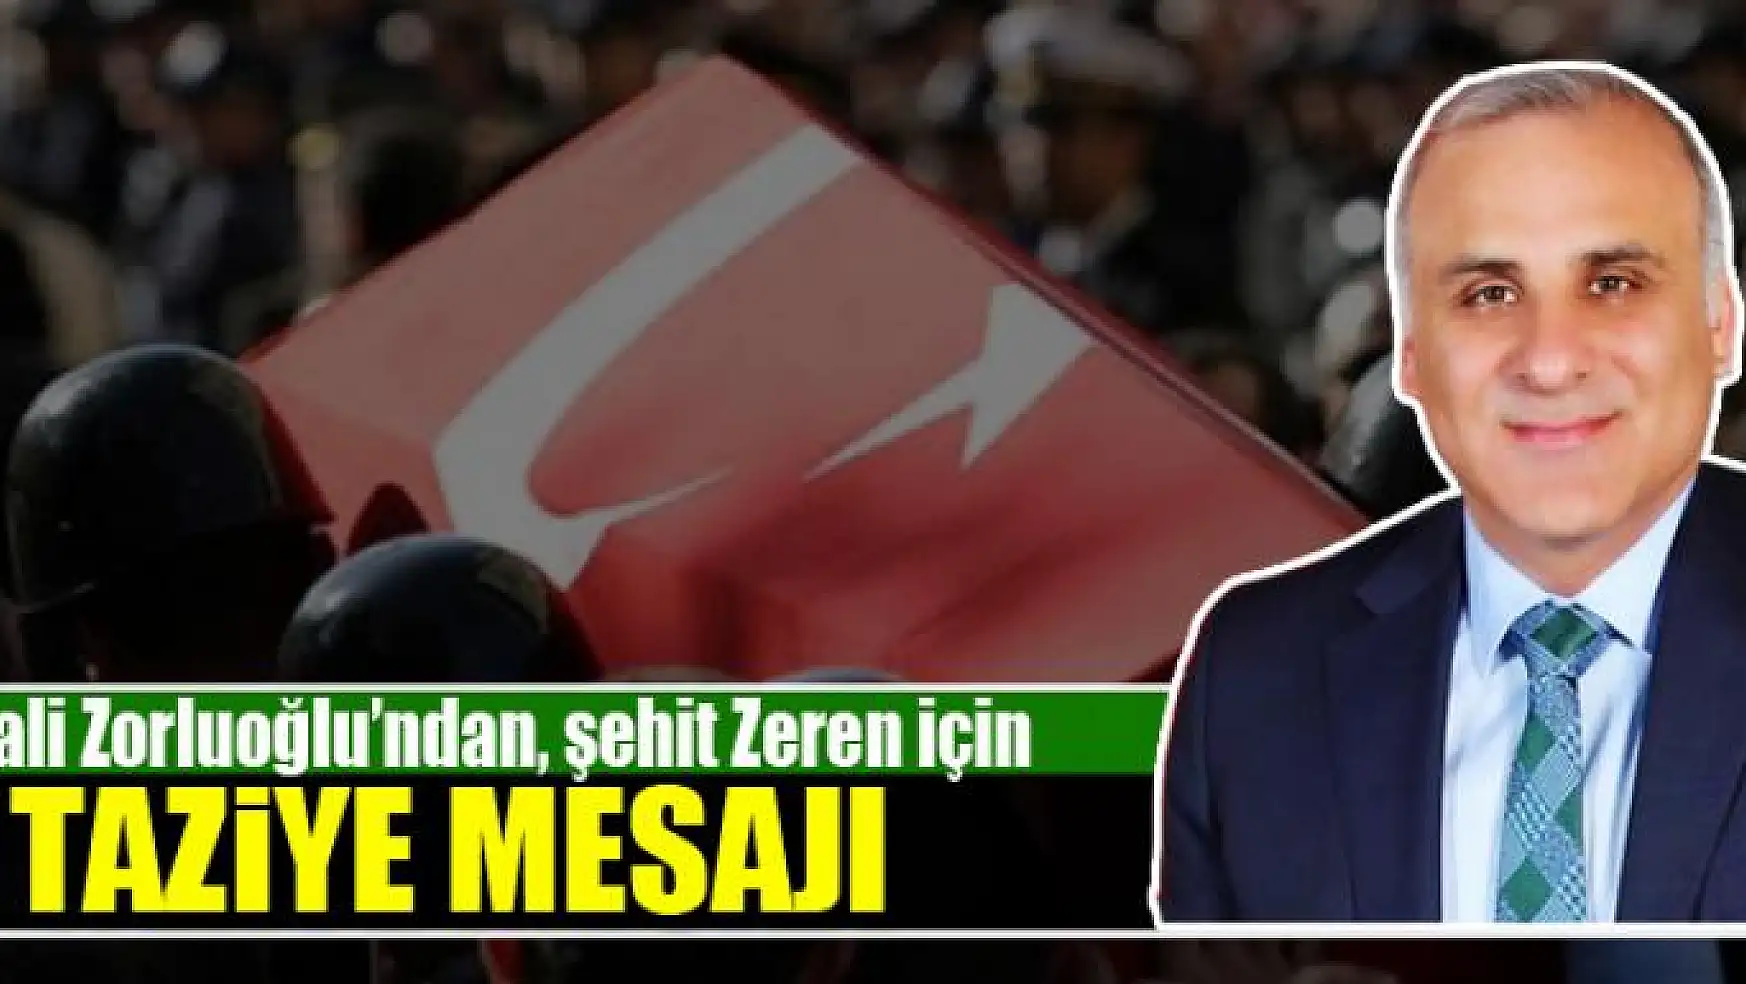 Vali Zorluoğlu, şehit Zeren için taziye mesajı yayınladı 